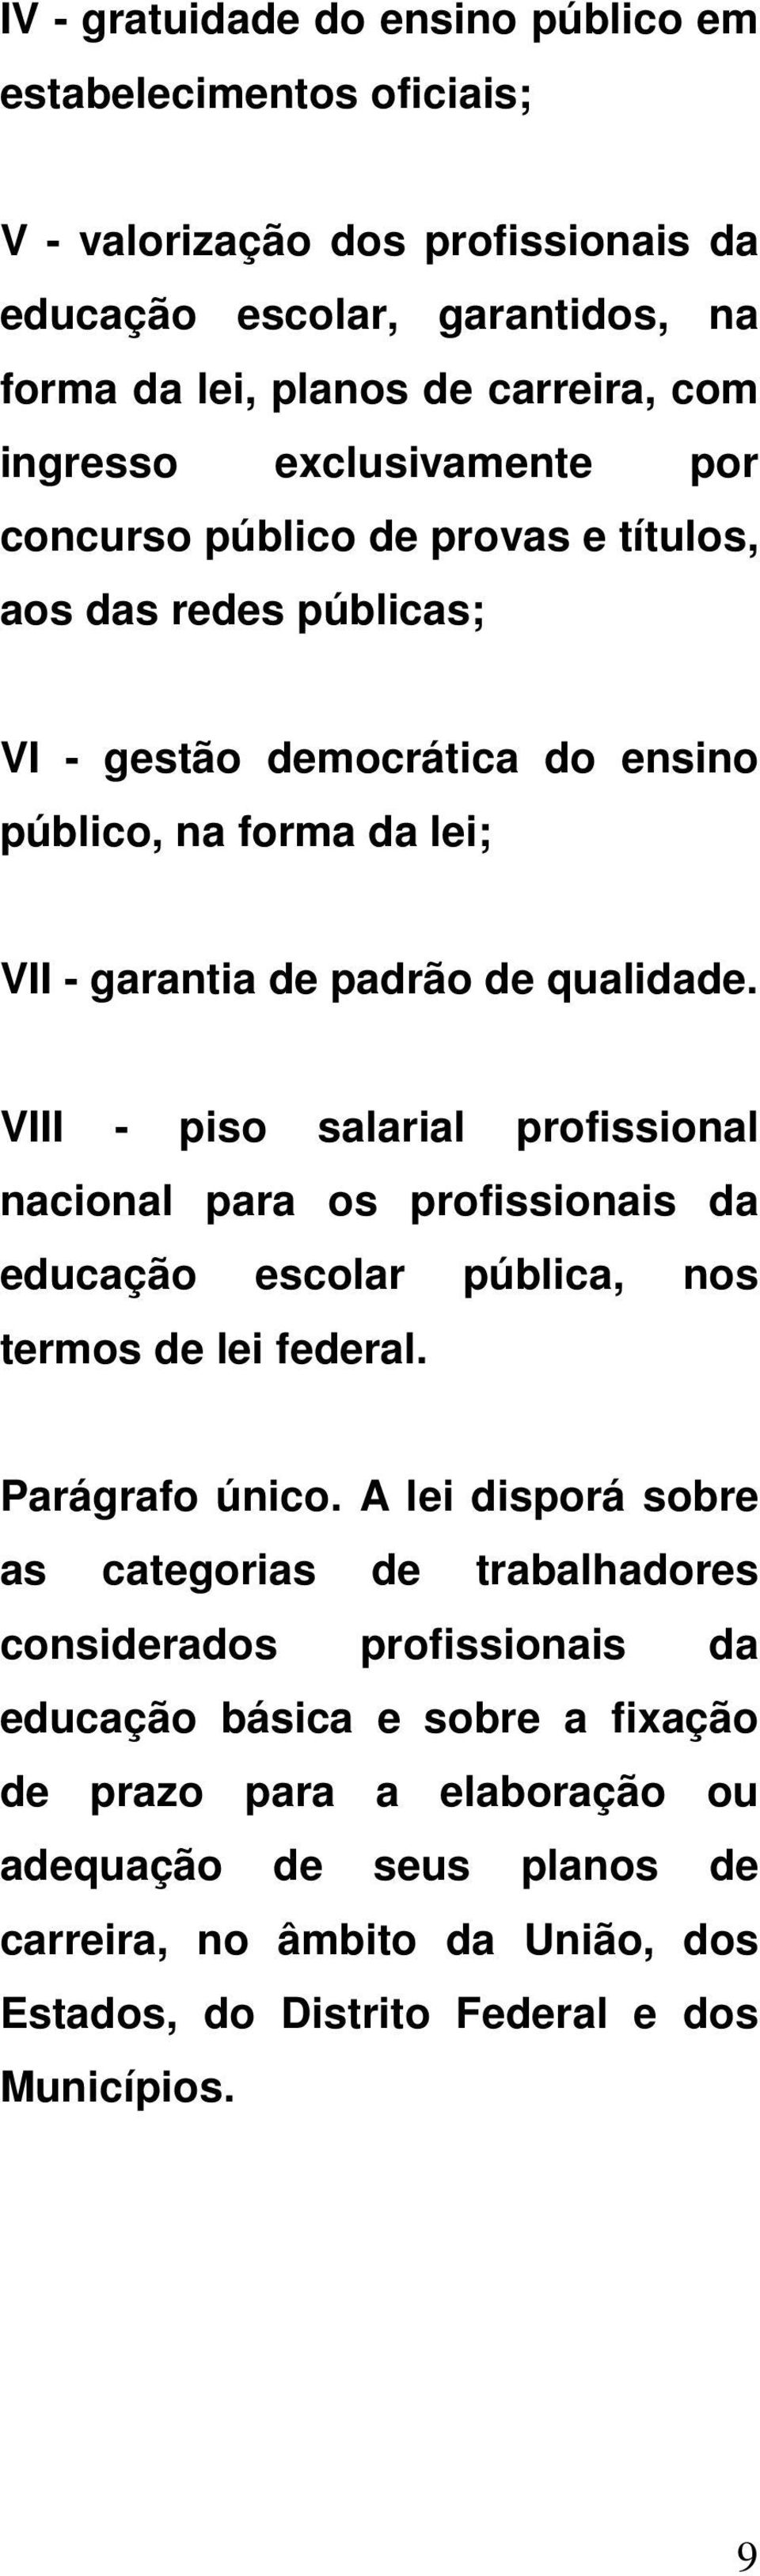 VIII - piso salarial profissional nacional para os profissionais da educação escolar pública, nos termos de lei federal. Parágrafo único.